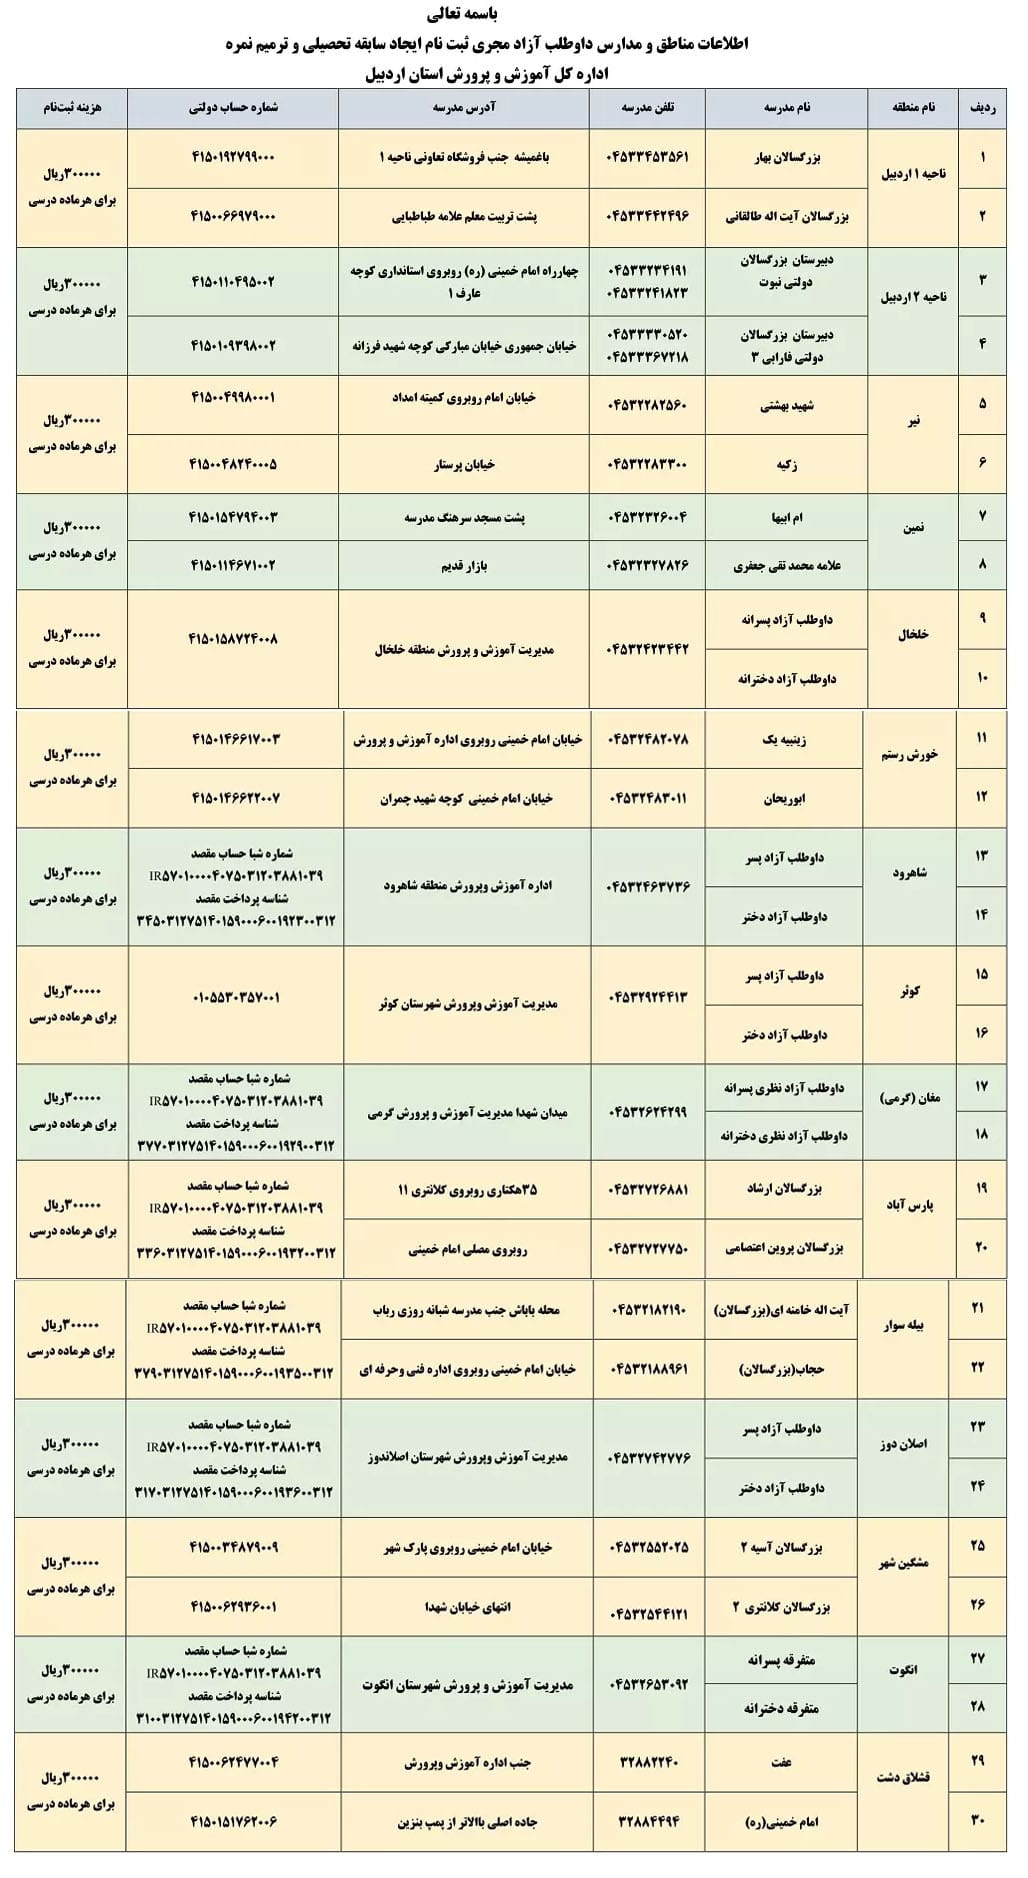 اطلاعات تماس و آدرس مدرسه های استان اردبیل برای ثبت نام ترمیم معدل